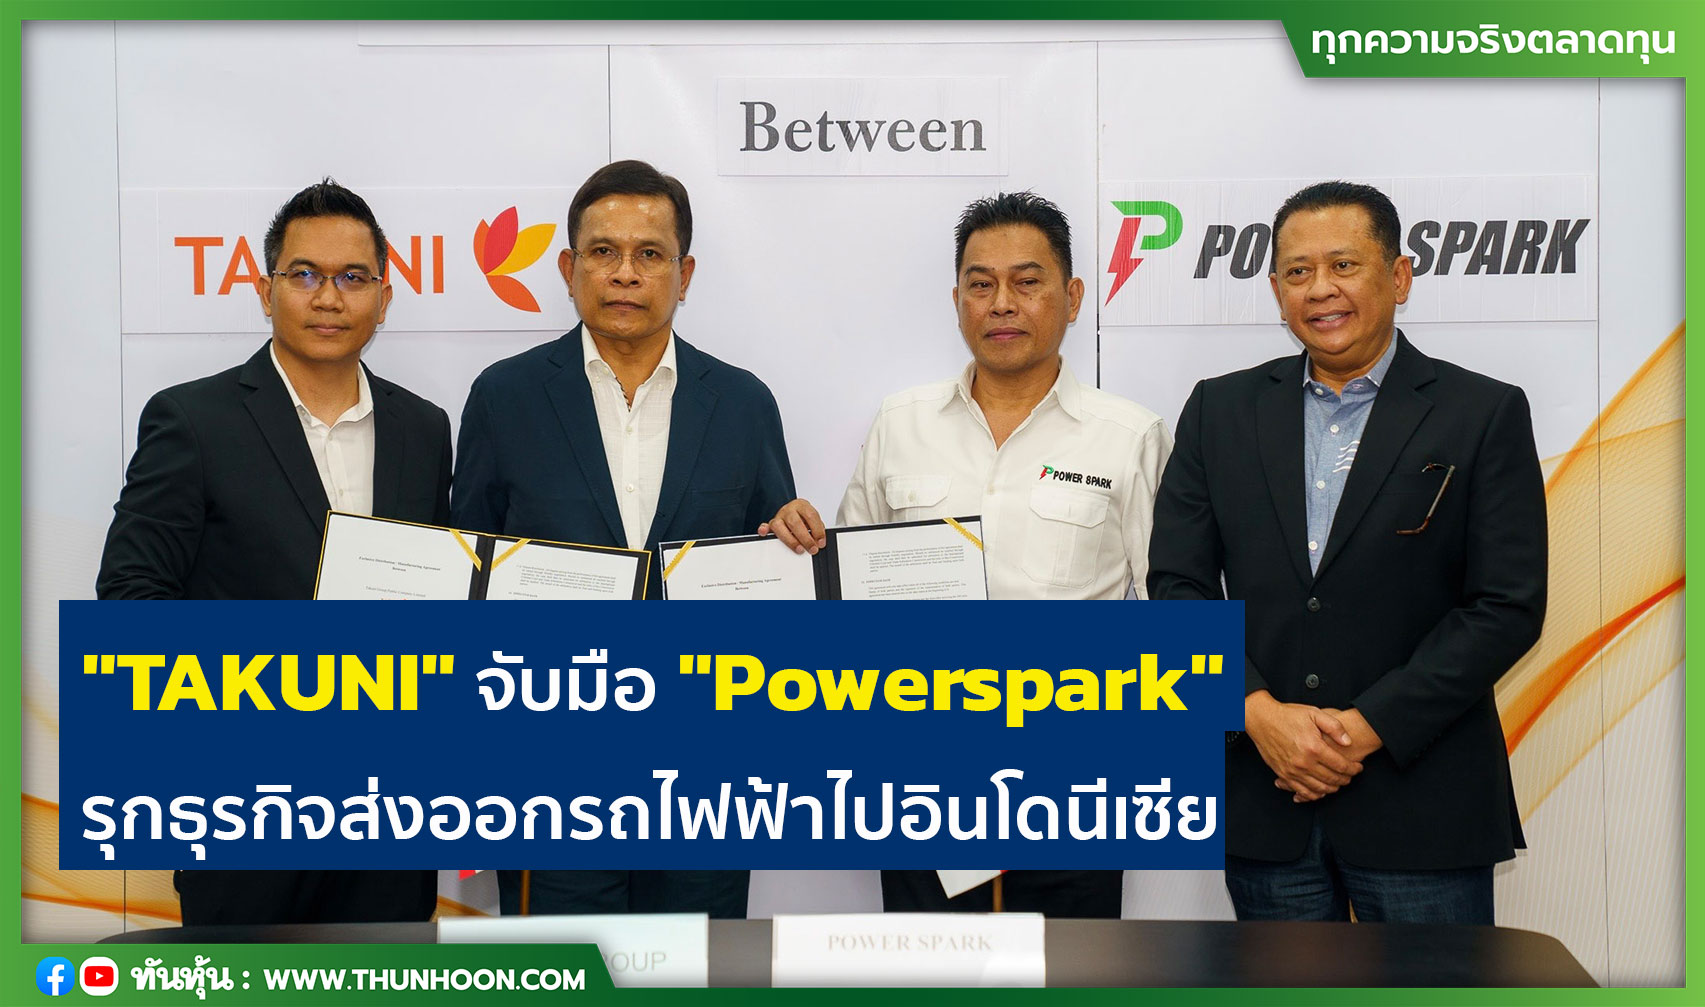 TAKUNI จับมือ Powerspark รุกธุรกิจส่งออกรถไฟฟ้าไปอินโดนีเซีย